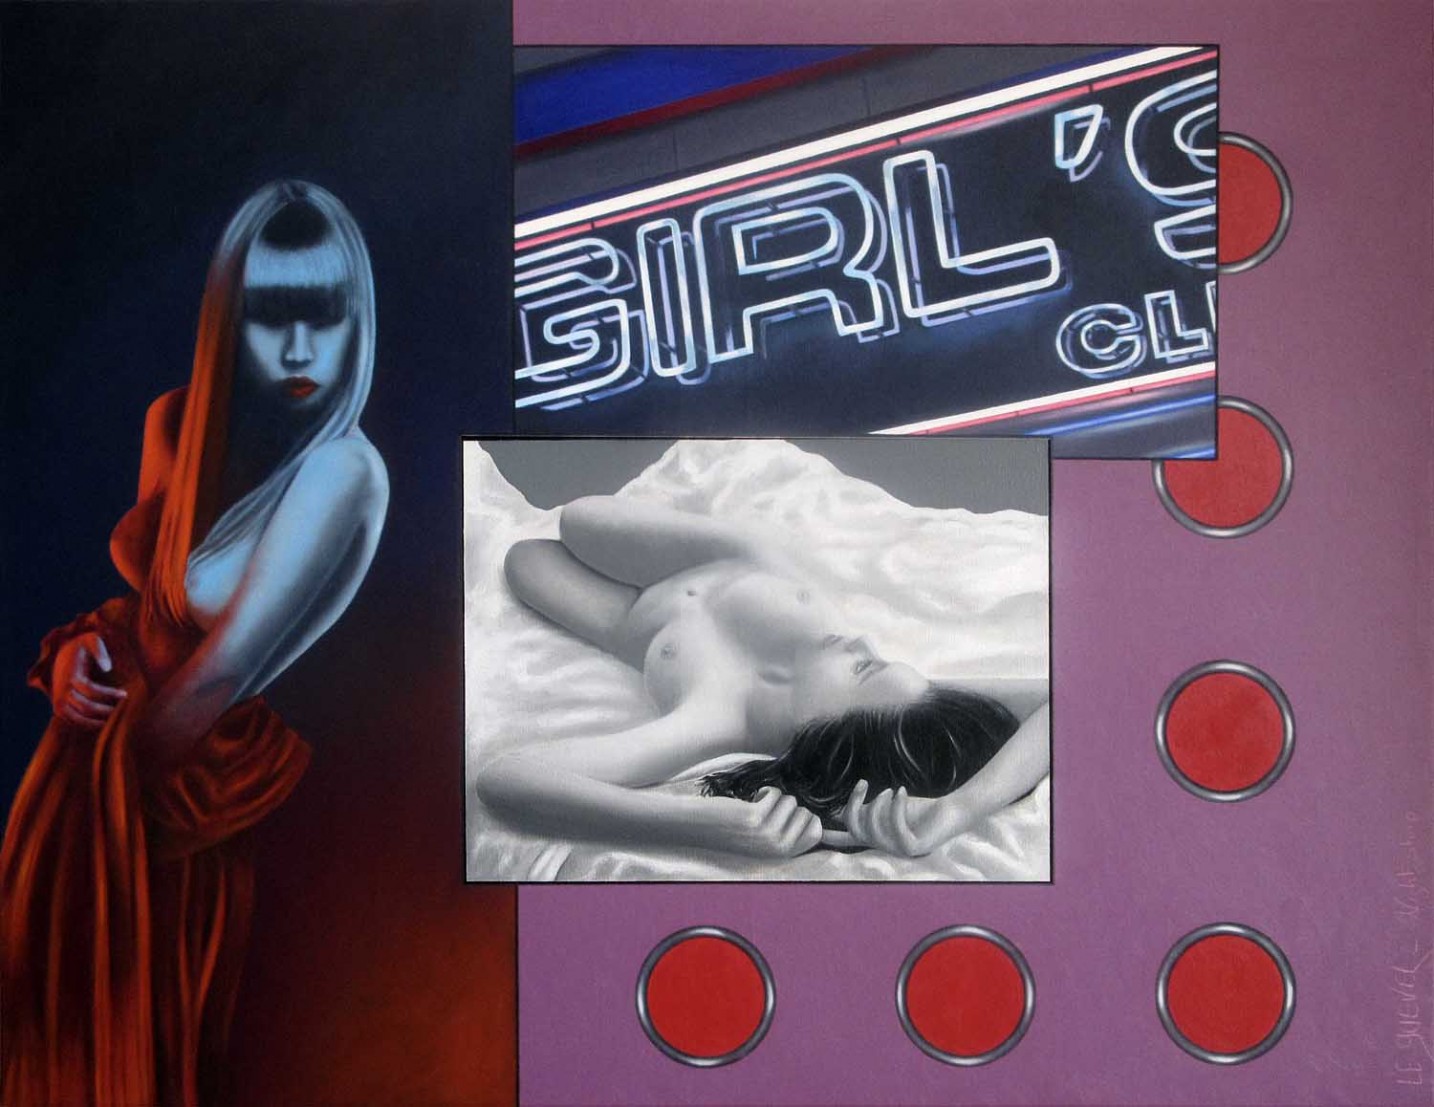 Magnifique peinture composé de plusieurs images avec des femmes dénudés en référence au monde de la nuit